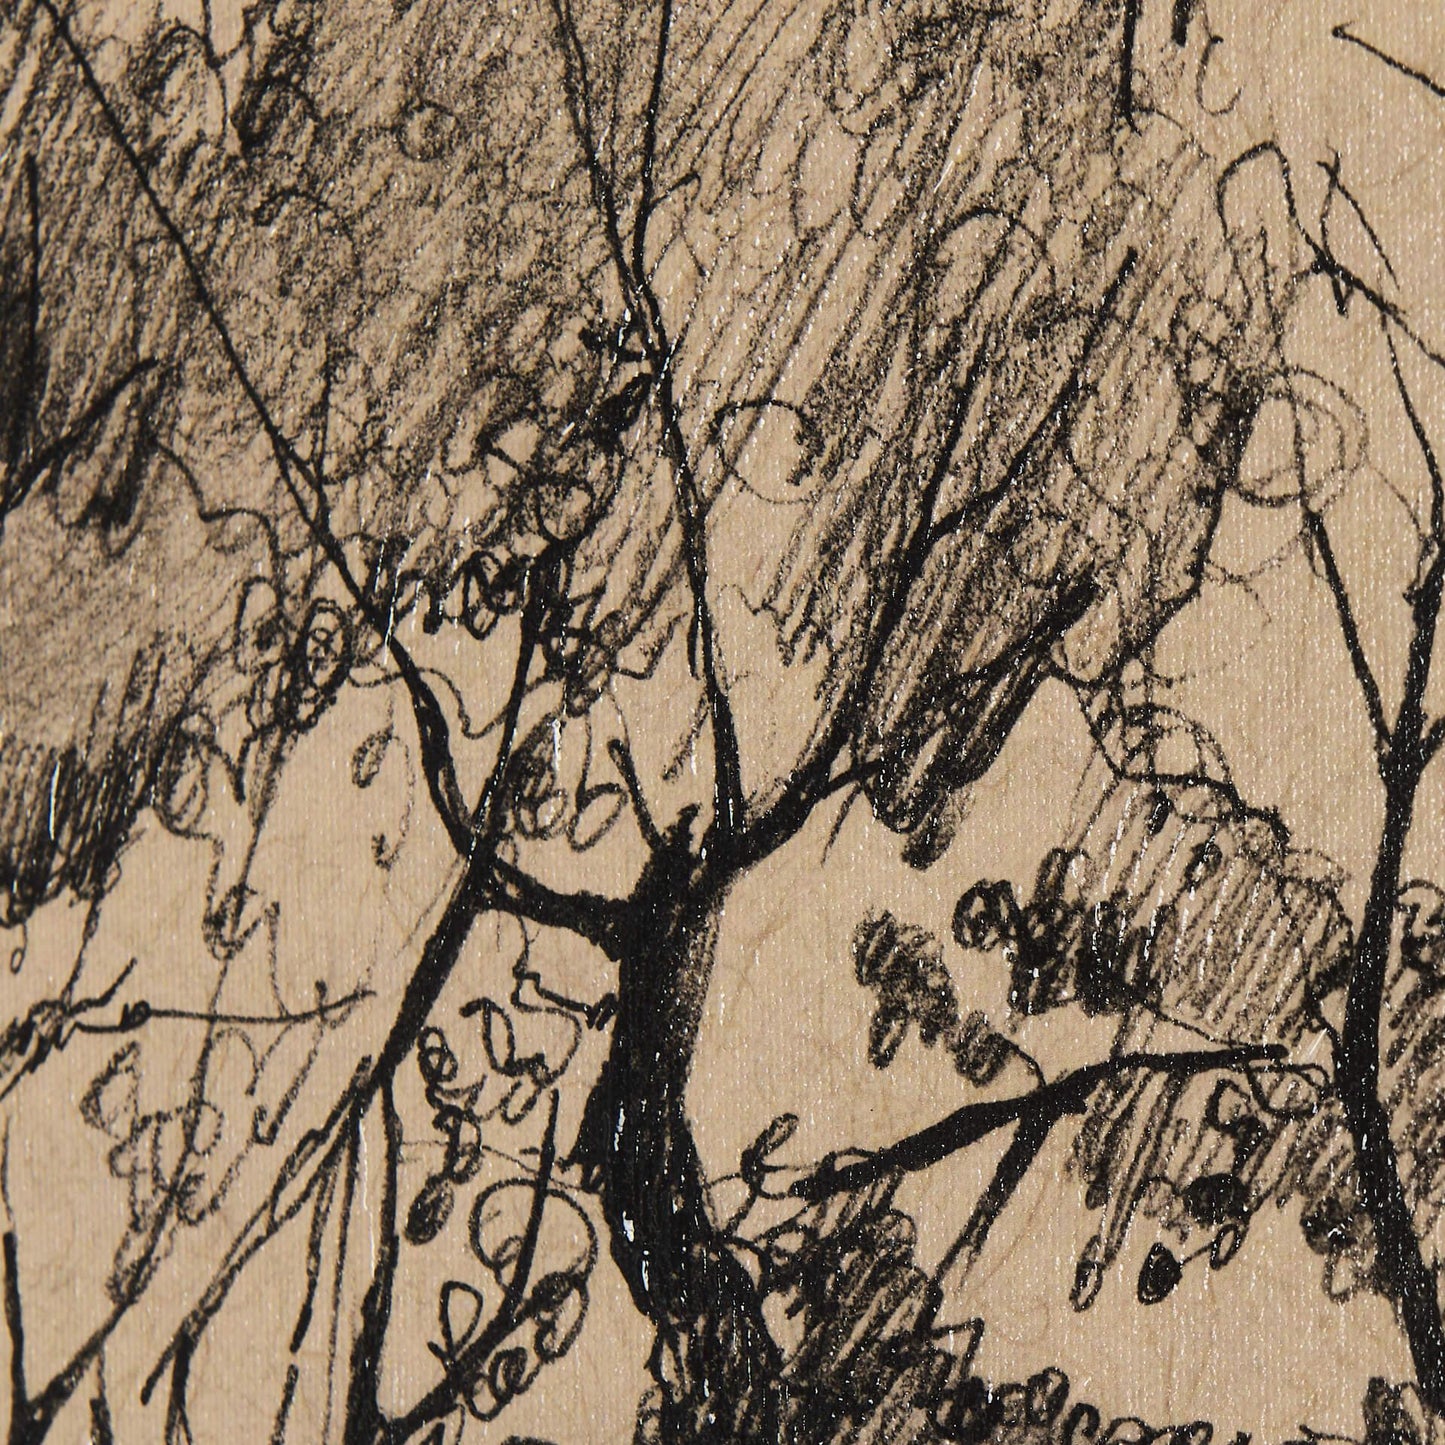 Tree Drawing I (45 x 60)